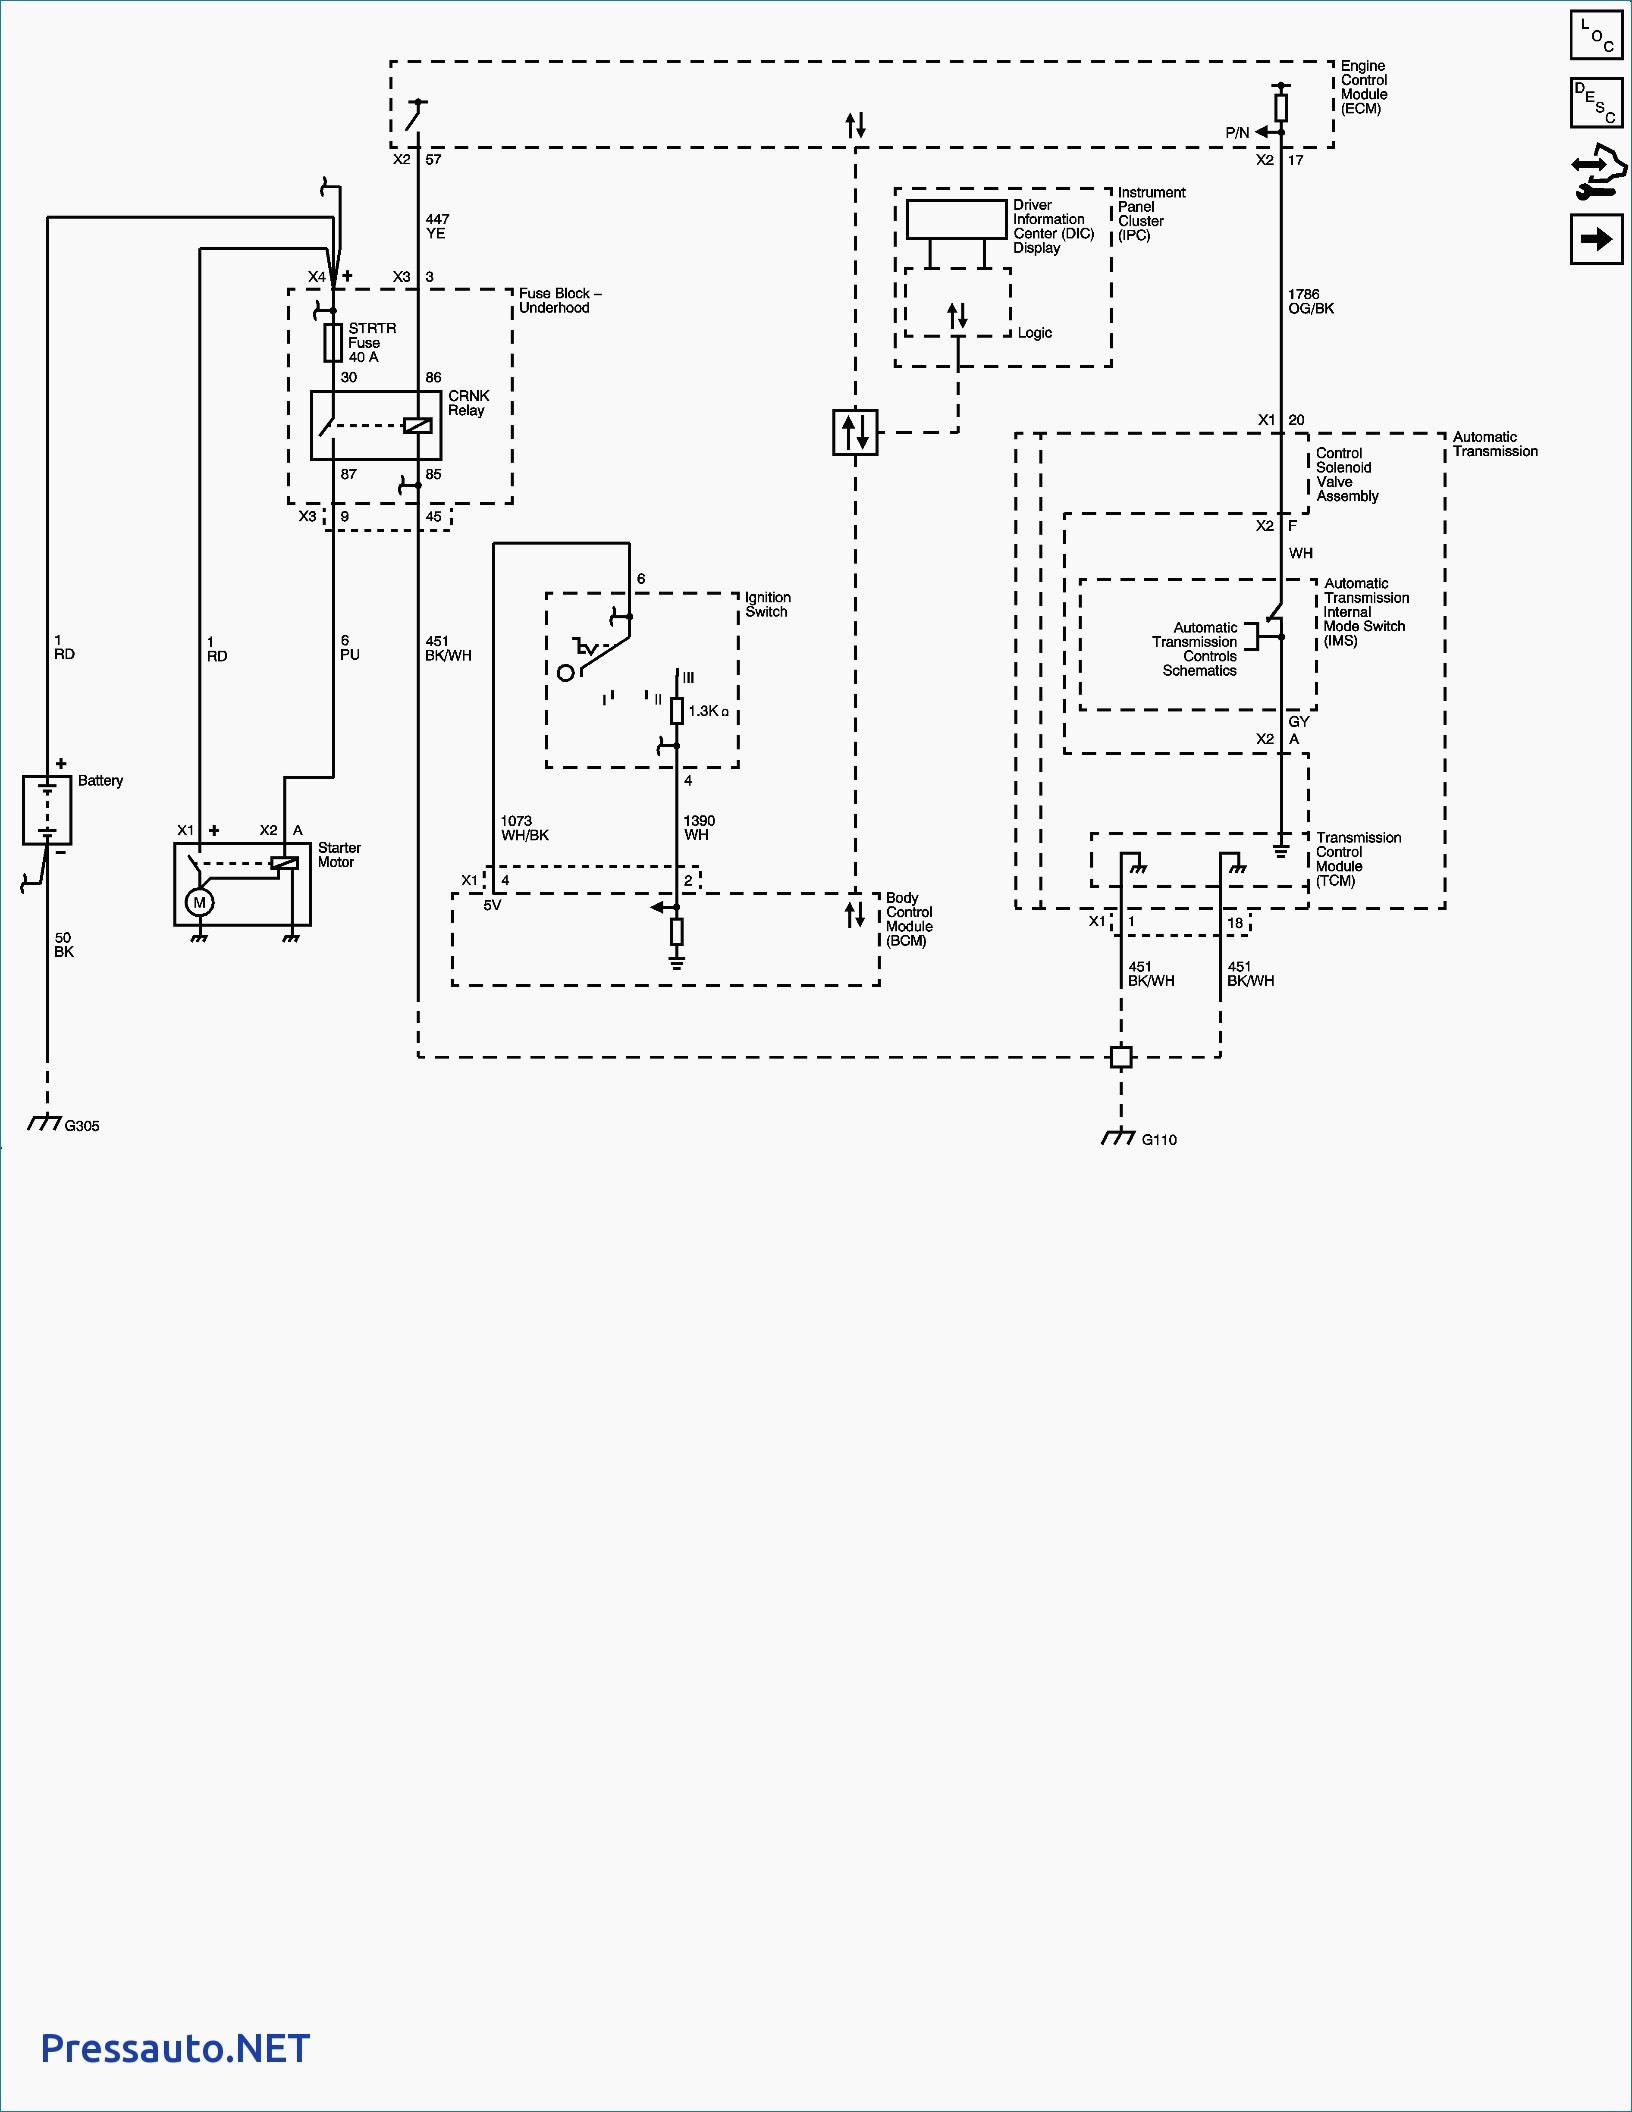 Data Link Connector Wiring Diagram Best Best Obd1 Wiring Diagram Electrical Circuit Diagram Ideas